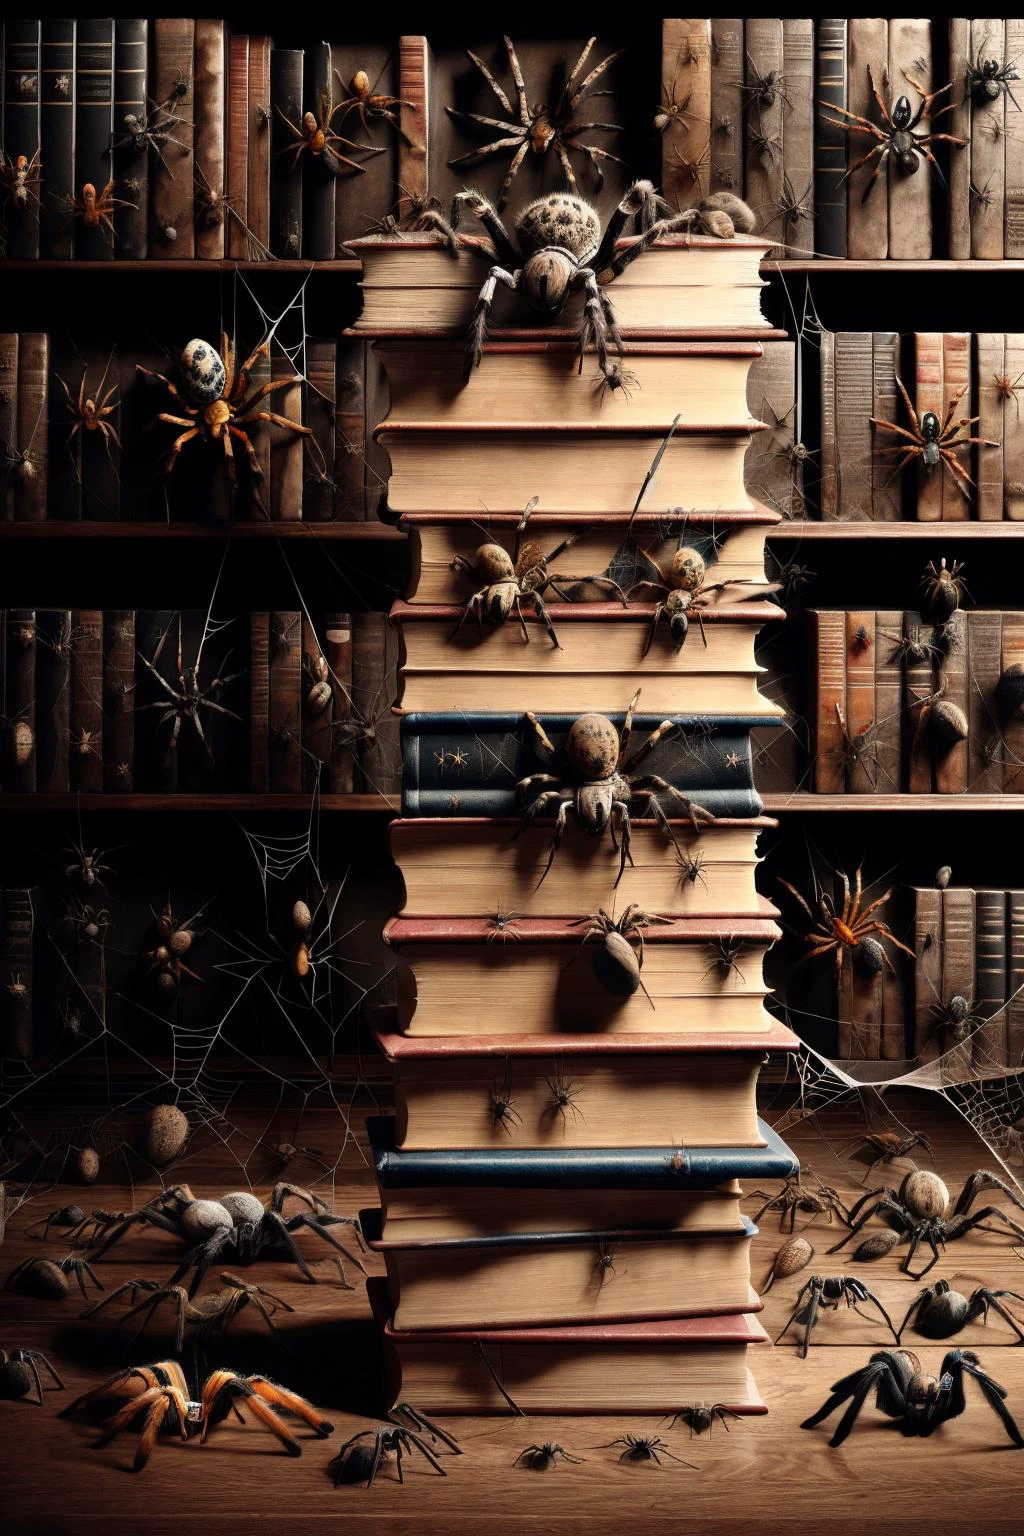 Ais-spiderz em uma pilha de livros, Em uma biblioteca tranquila 